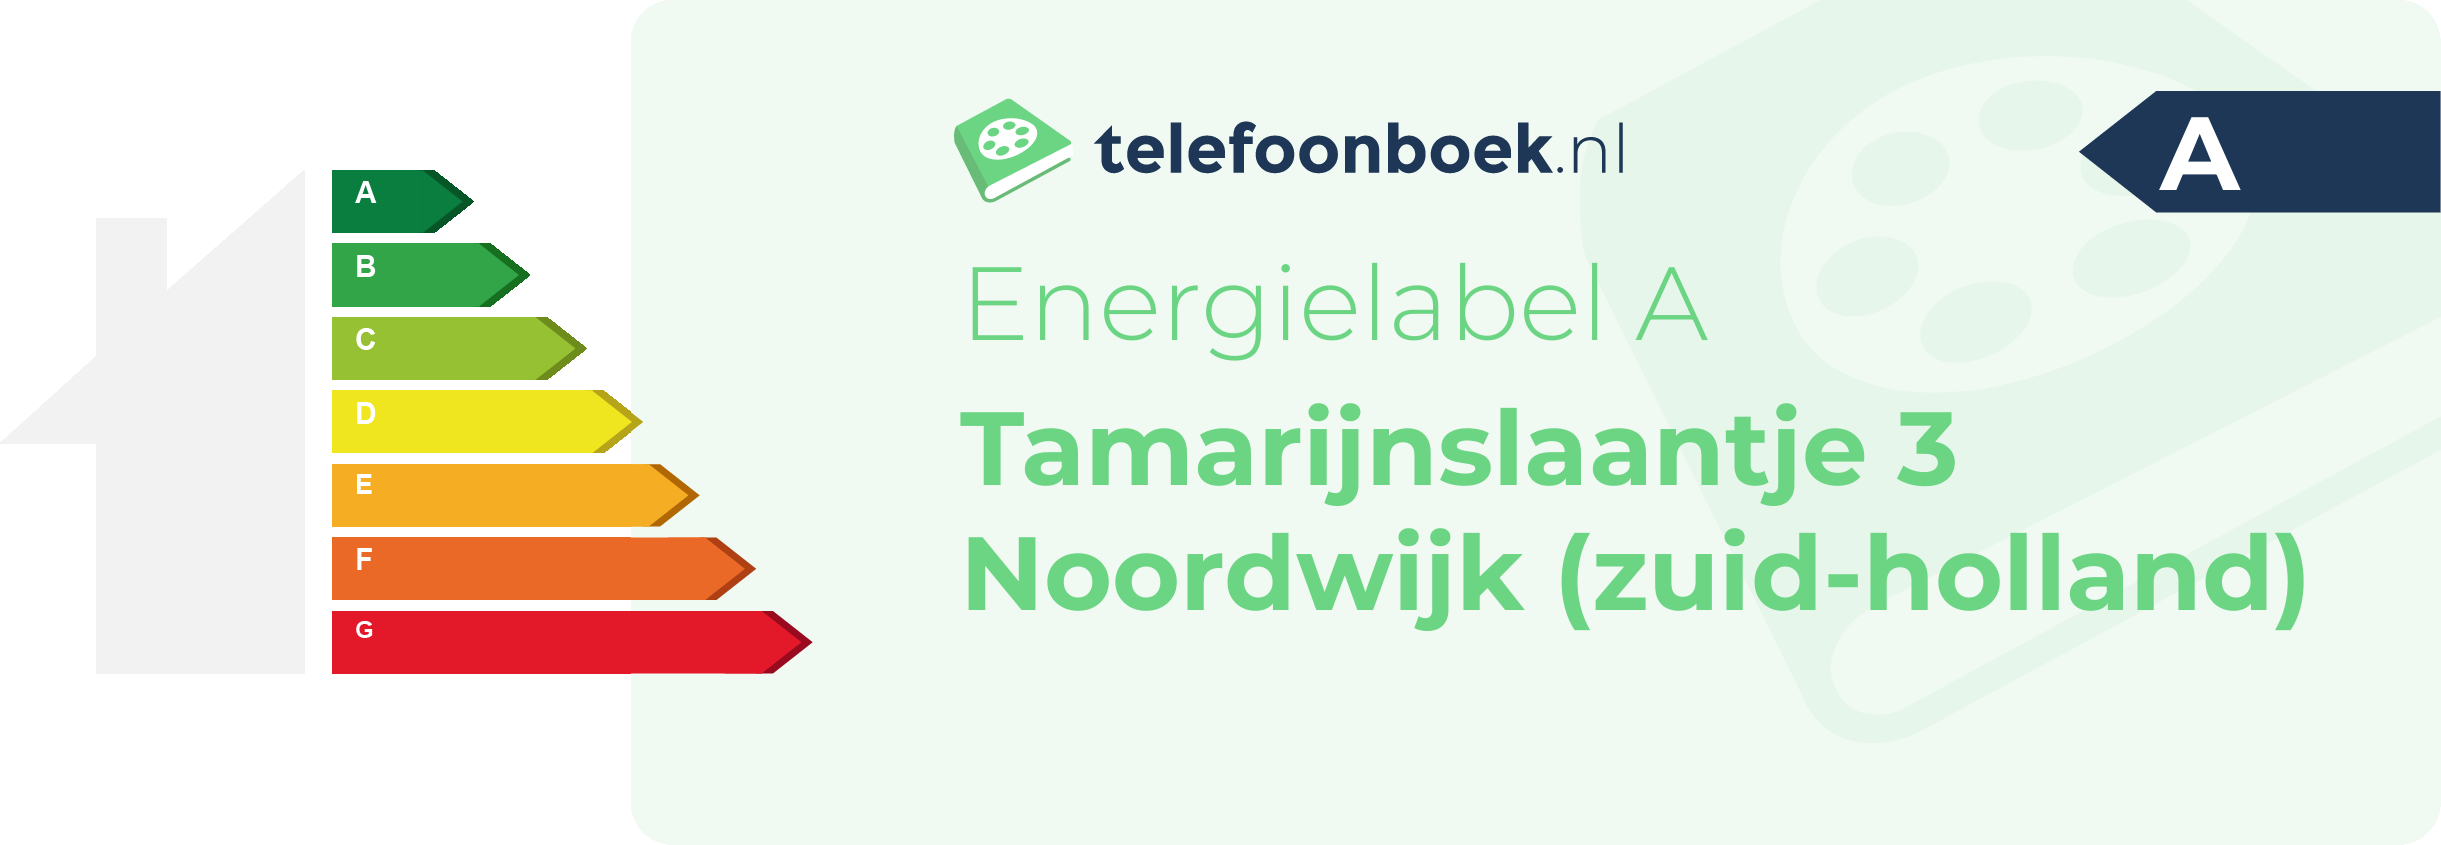 Energielabel Tamarijnslaantje 3 Noordwijk (Zuid-Holland)